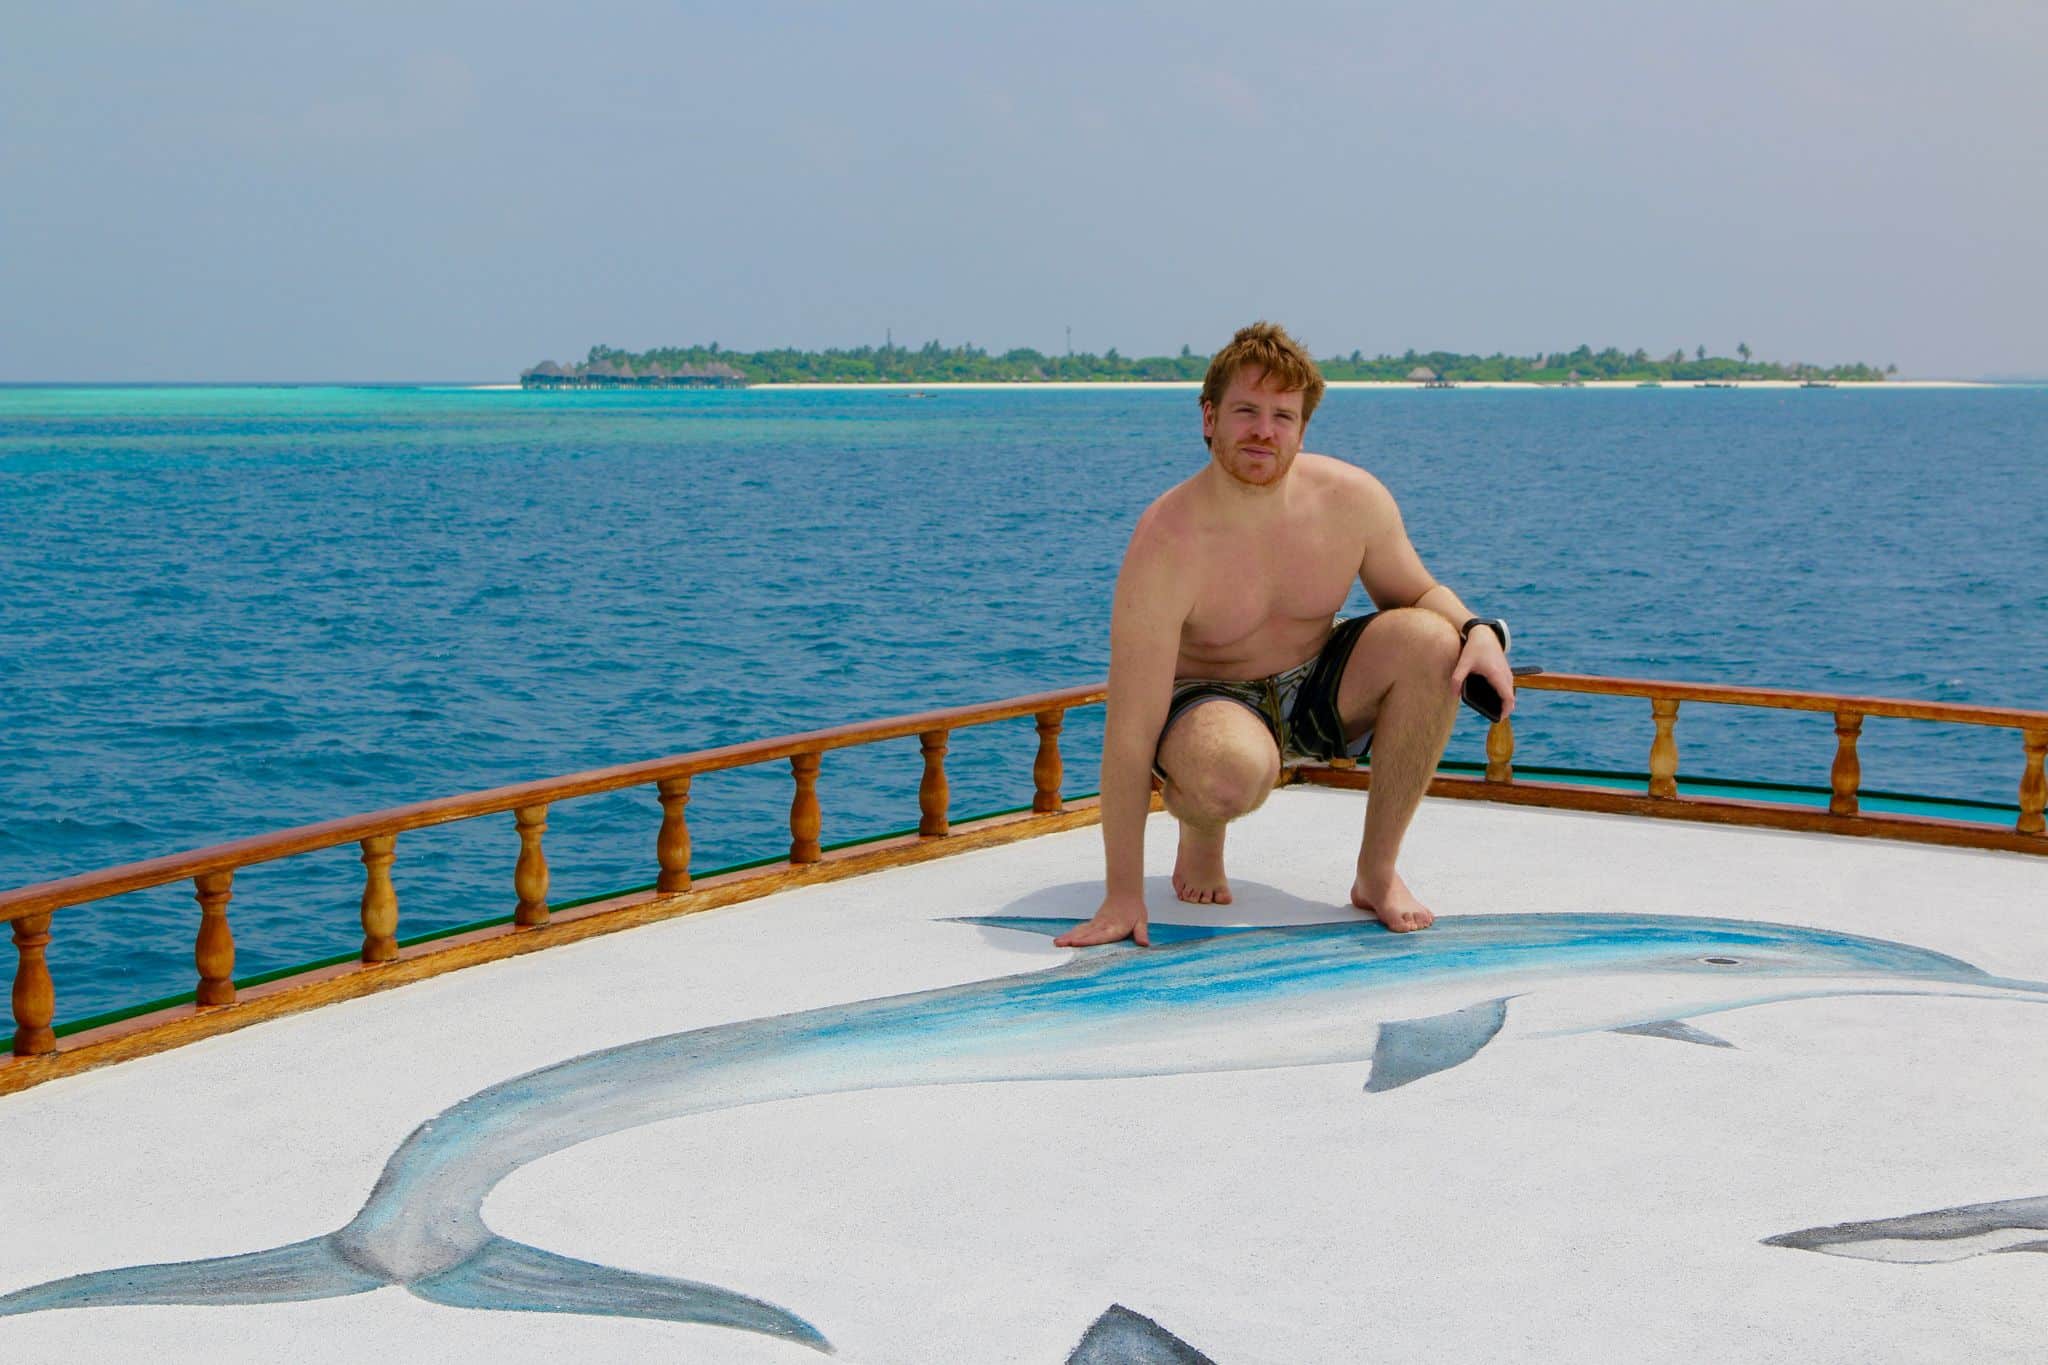 Eine Malediven-Reise gehört ganz sicher zu den Dingen, die unbedingt auf deine Bucket Liste gehören.